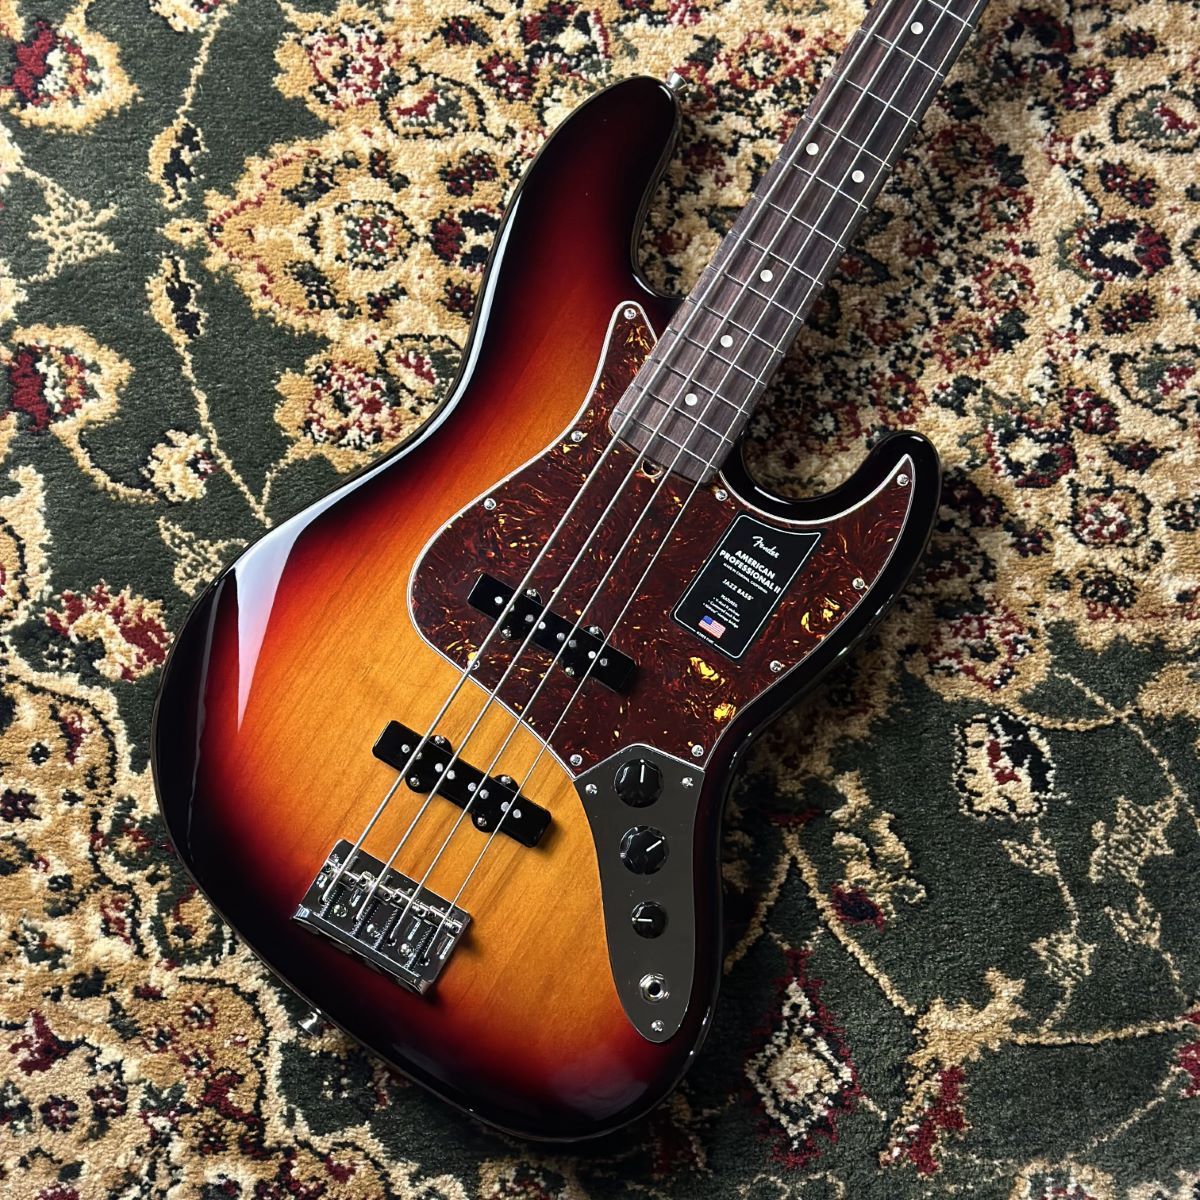 CONTENTSFender American Professional II Jazz Bass 3-Color Sunburst この商品について技術者による安心のアフターフォロー最新情報を手に入れよう音楽をもっと楽しみたい方は音楽教室がおススメ♪お問い合わせこちらFender American […]